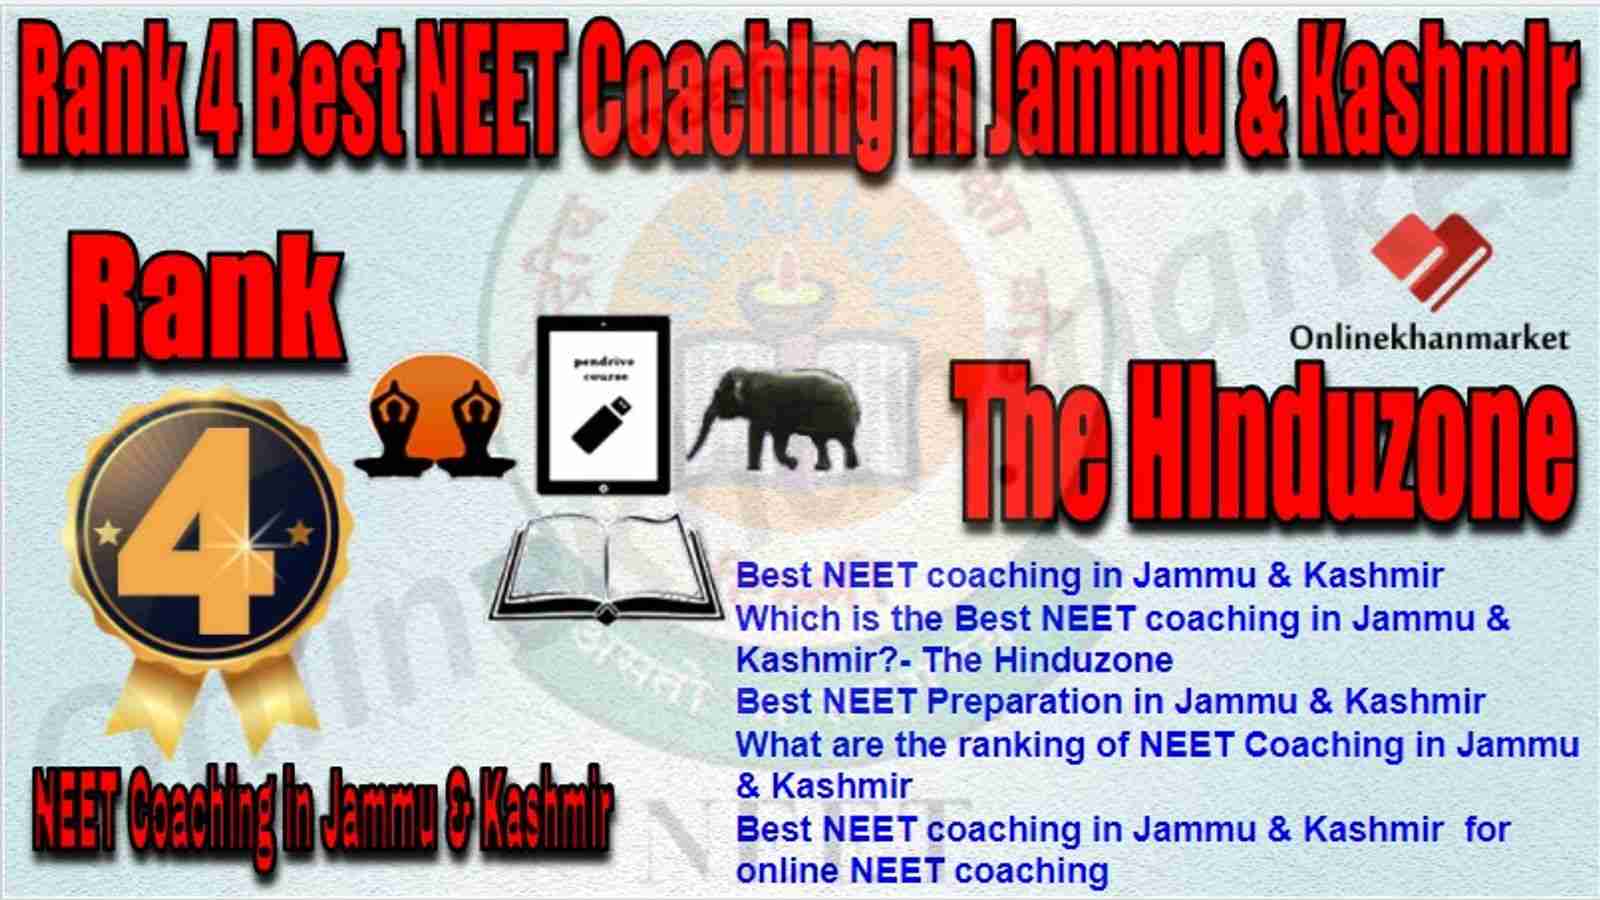 Rank 4 Best NEET Coaching in jammu &kashmir